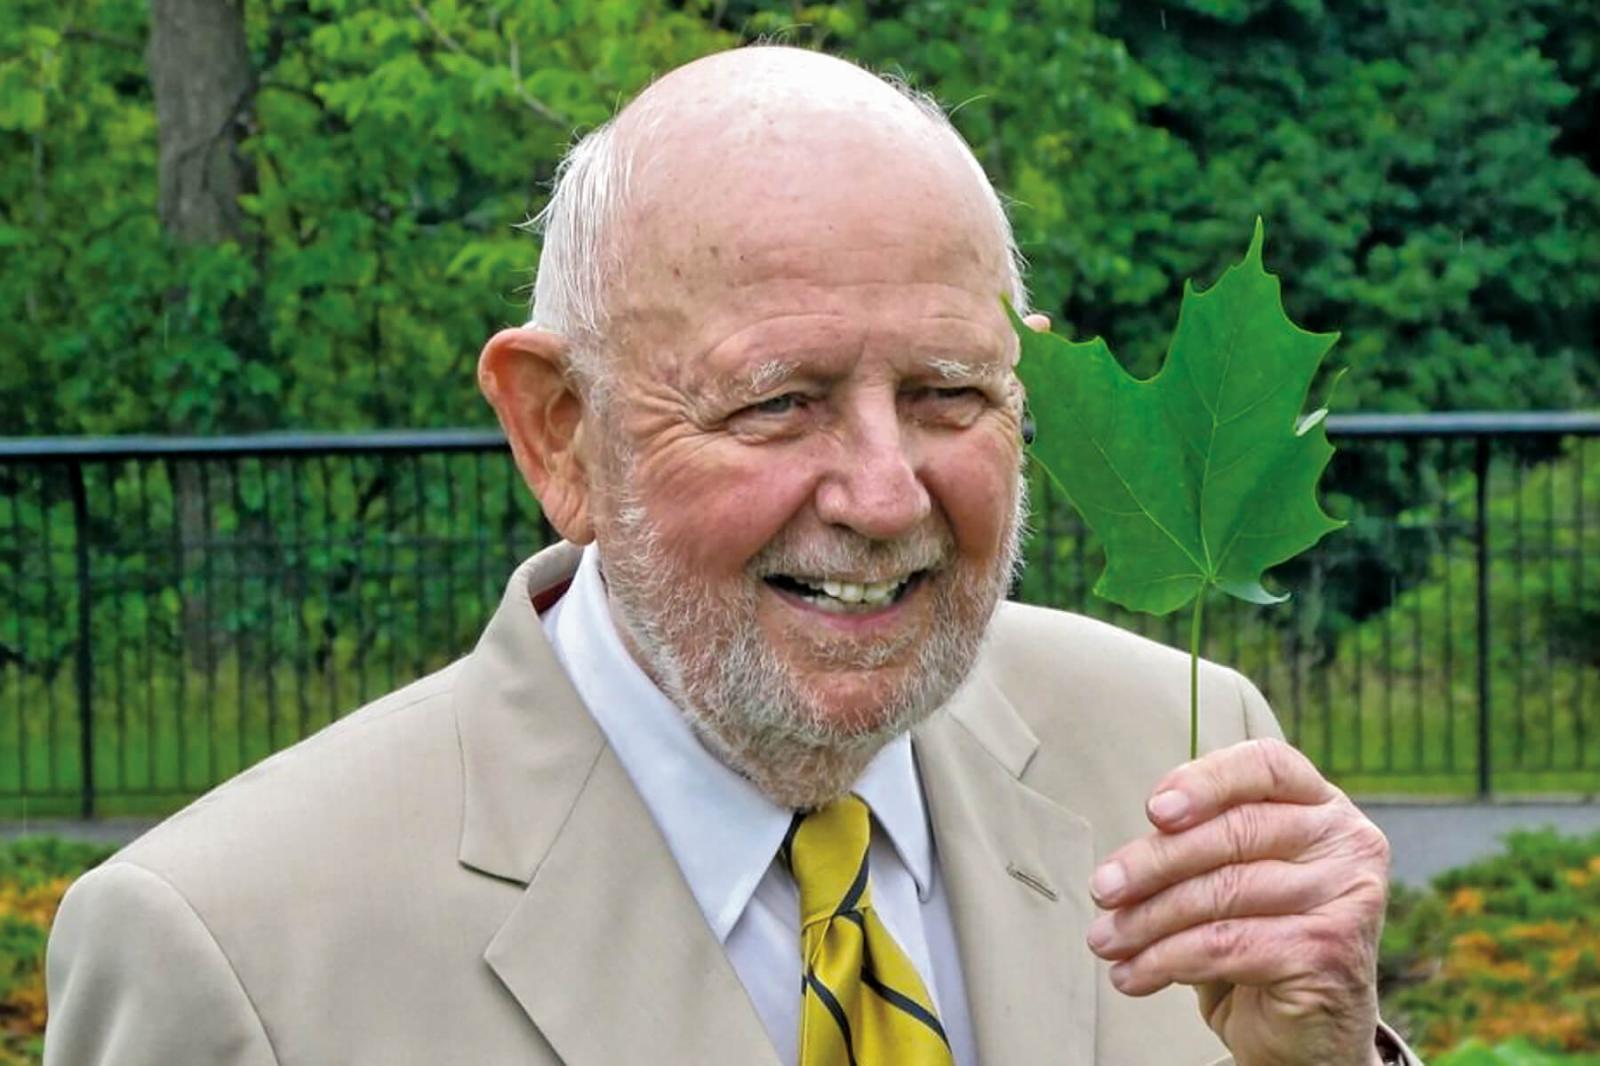 Ken Jewett, founder of Maple Leaves Forever